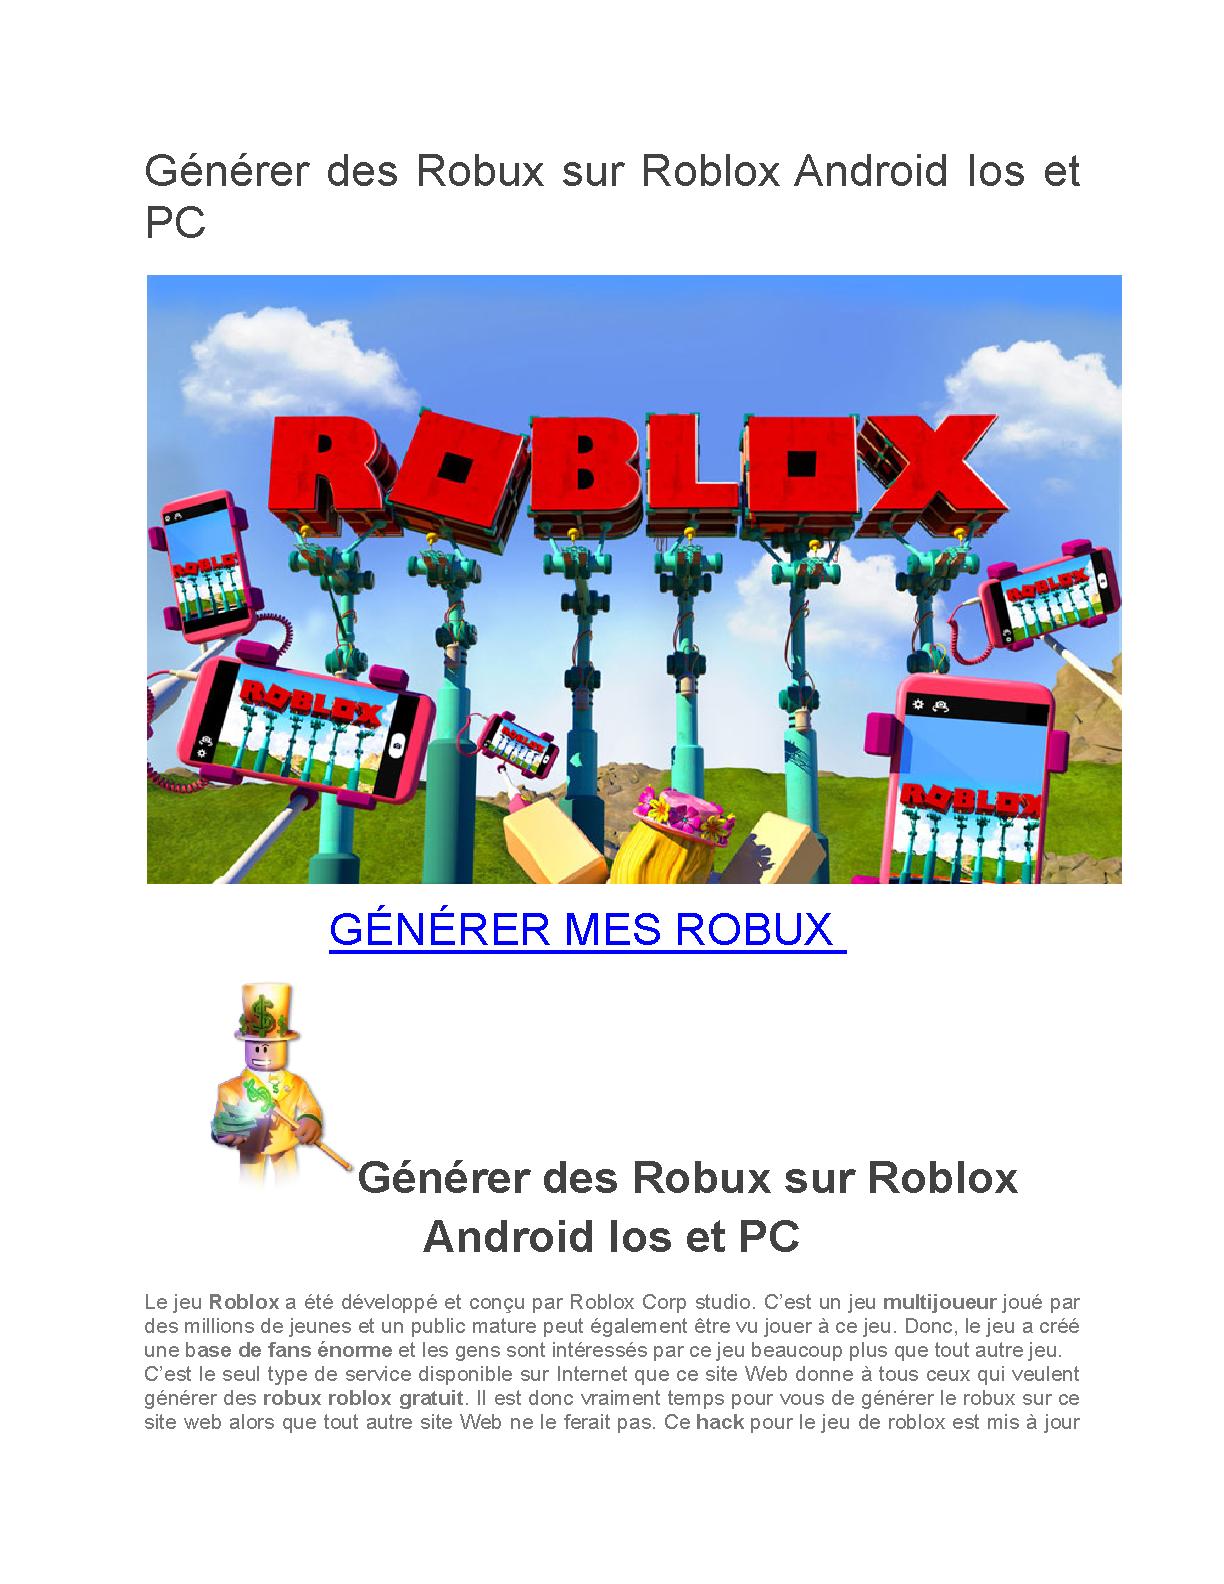 Comment Gagner Des Robux Sur Roblox En Jouant Comment Gagner Des Robux Sur Roblox En Jouant | AUTOMASITES™. Mar 2023